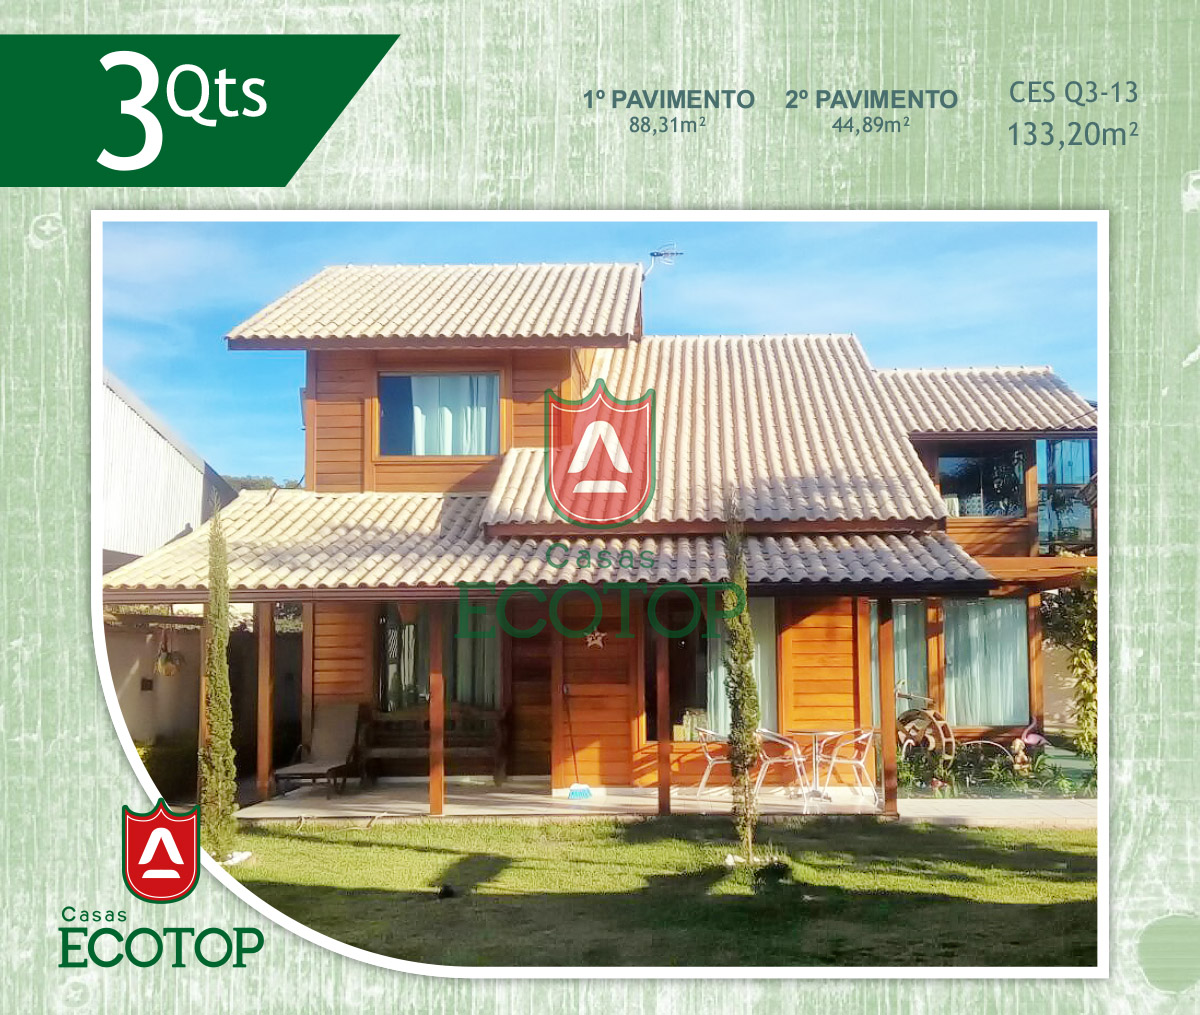 ces-13-fachada-casas-de-madeira-ecotop.cdr